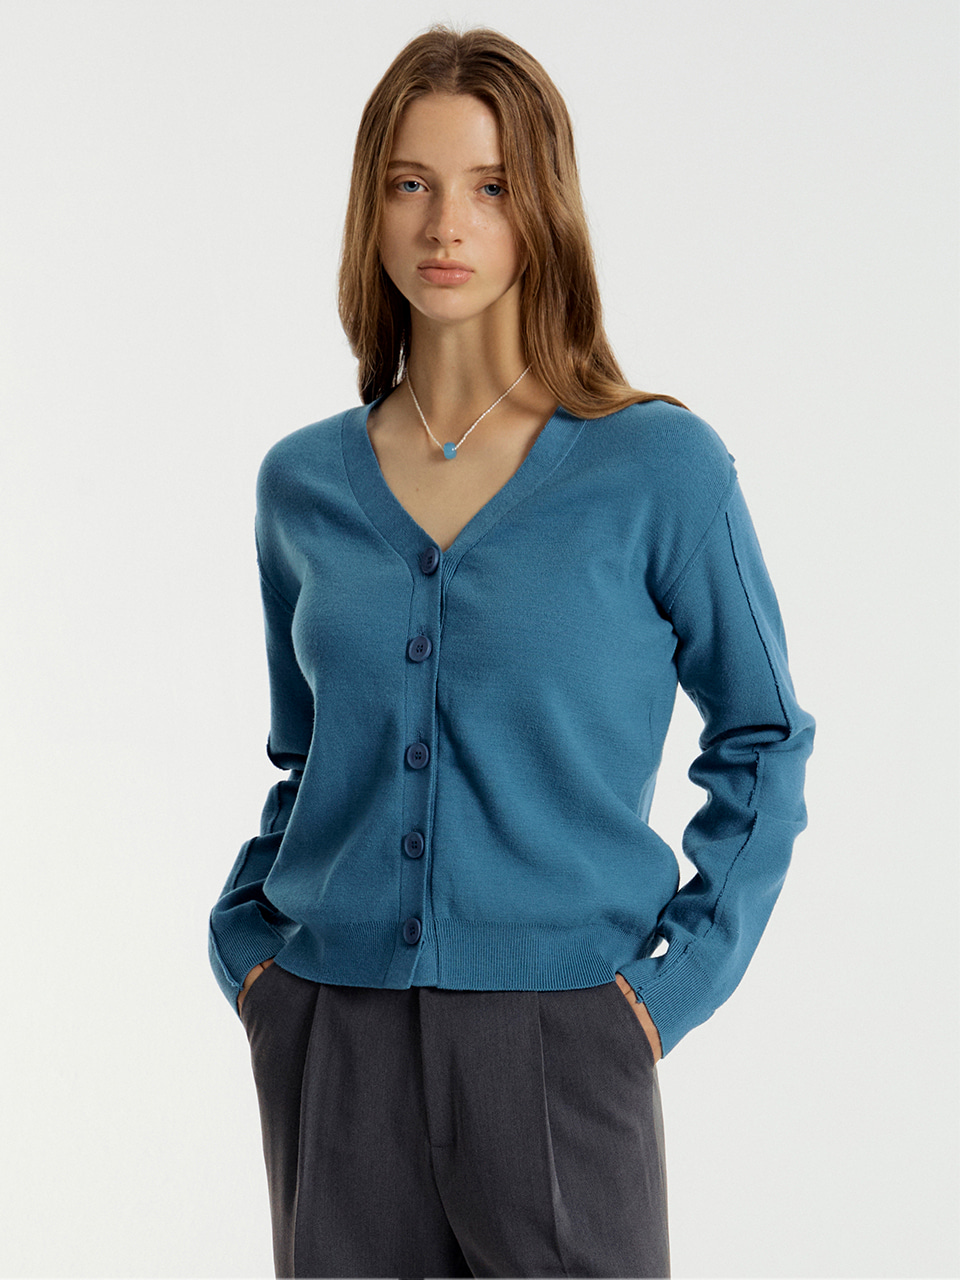 販売商品の販売 【citybreeze】wool colored V-neck knit top - www.gorgas.gob.pa